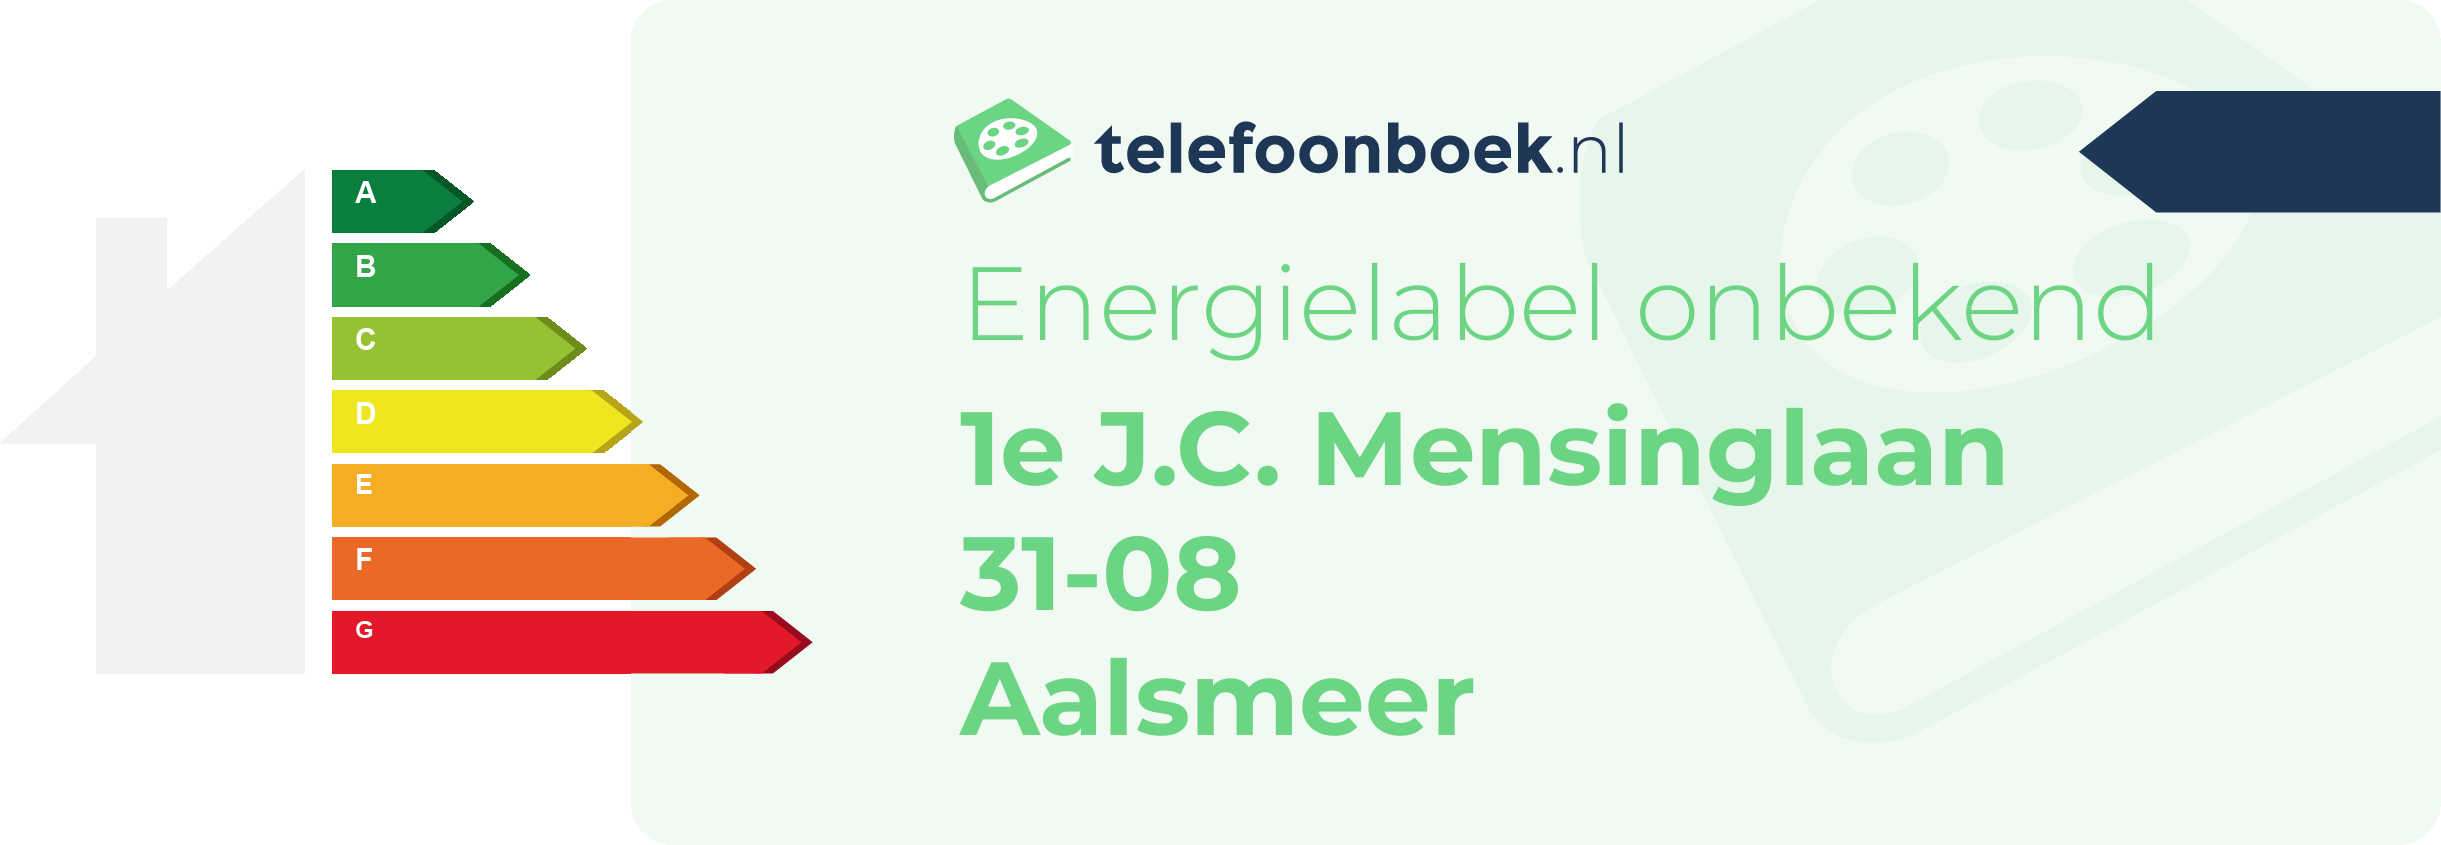 Energielabel 1e J.C. Mensinglaan 31-08 Aalsmeer